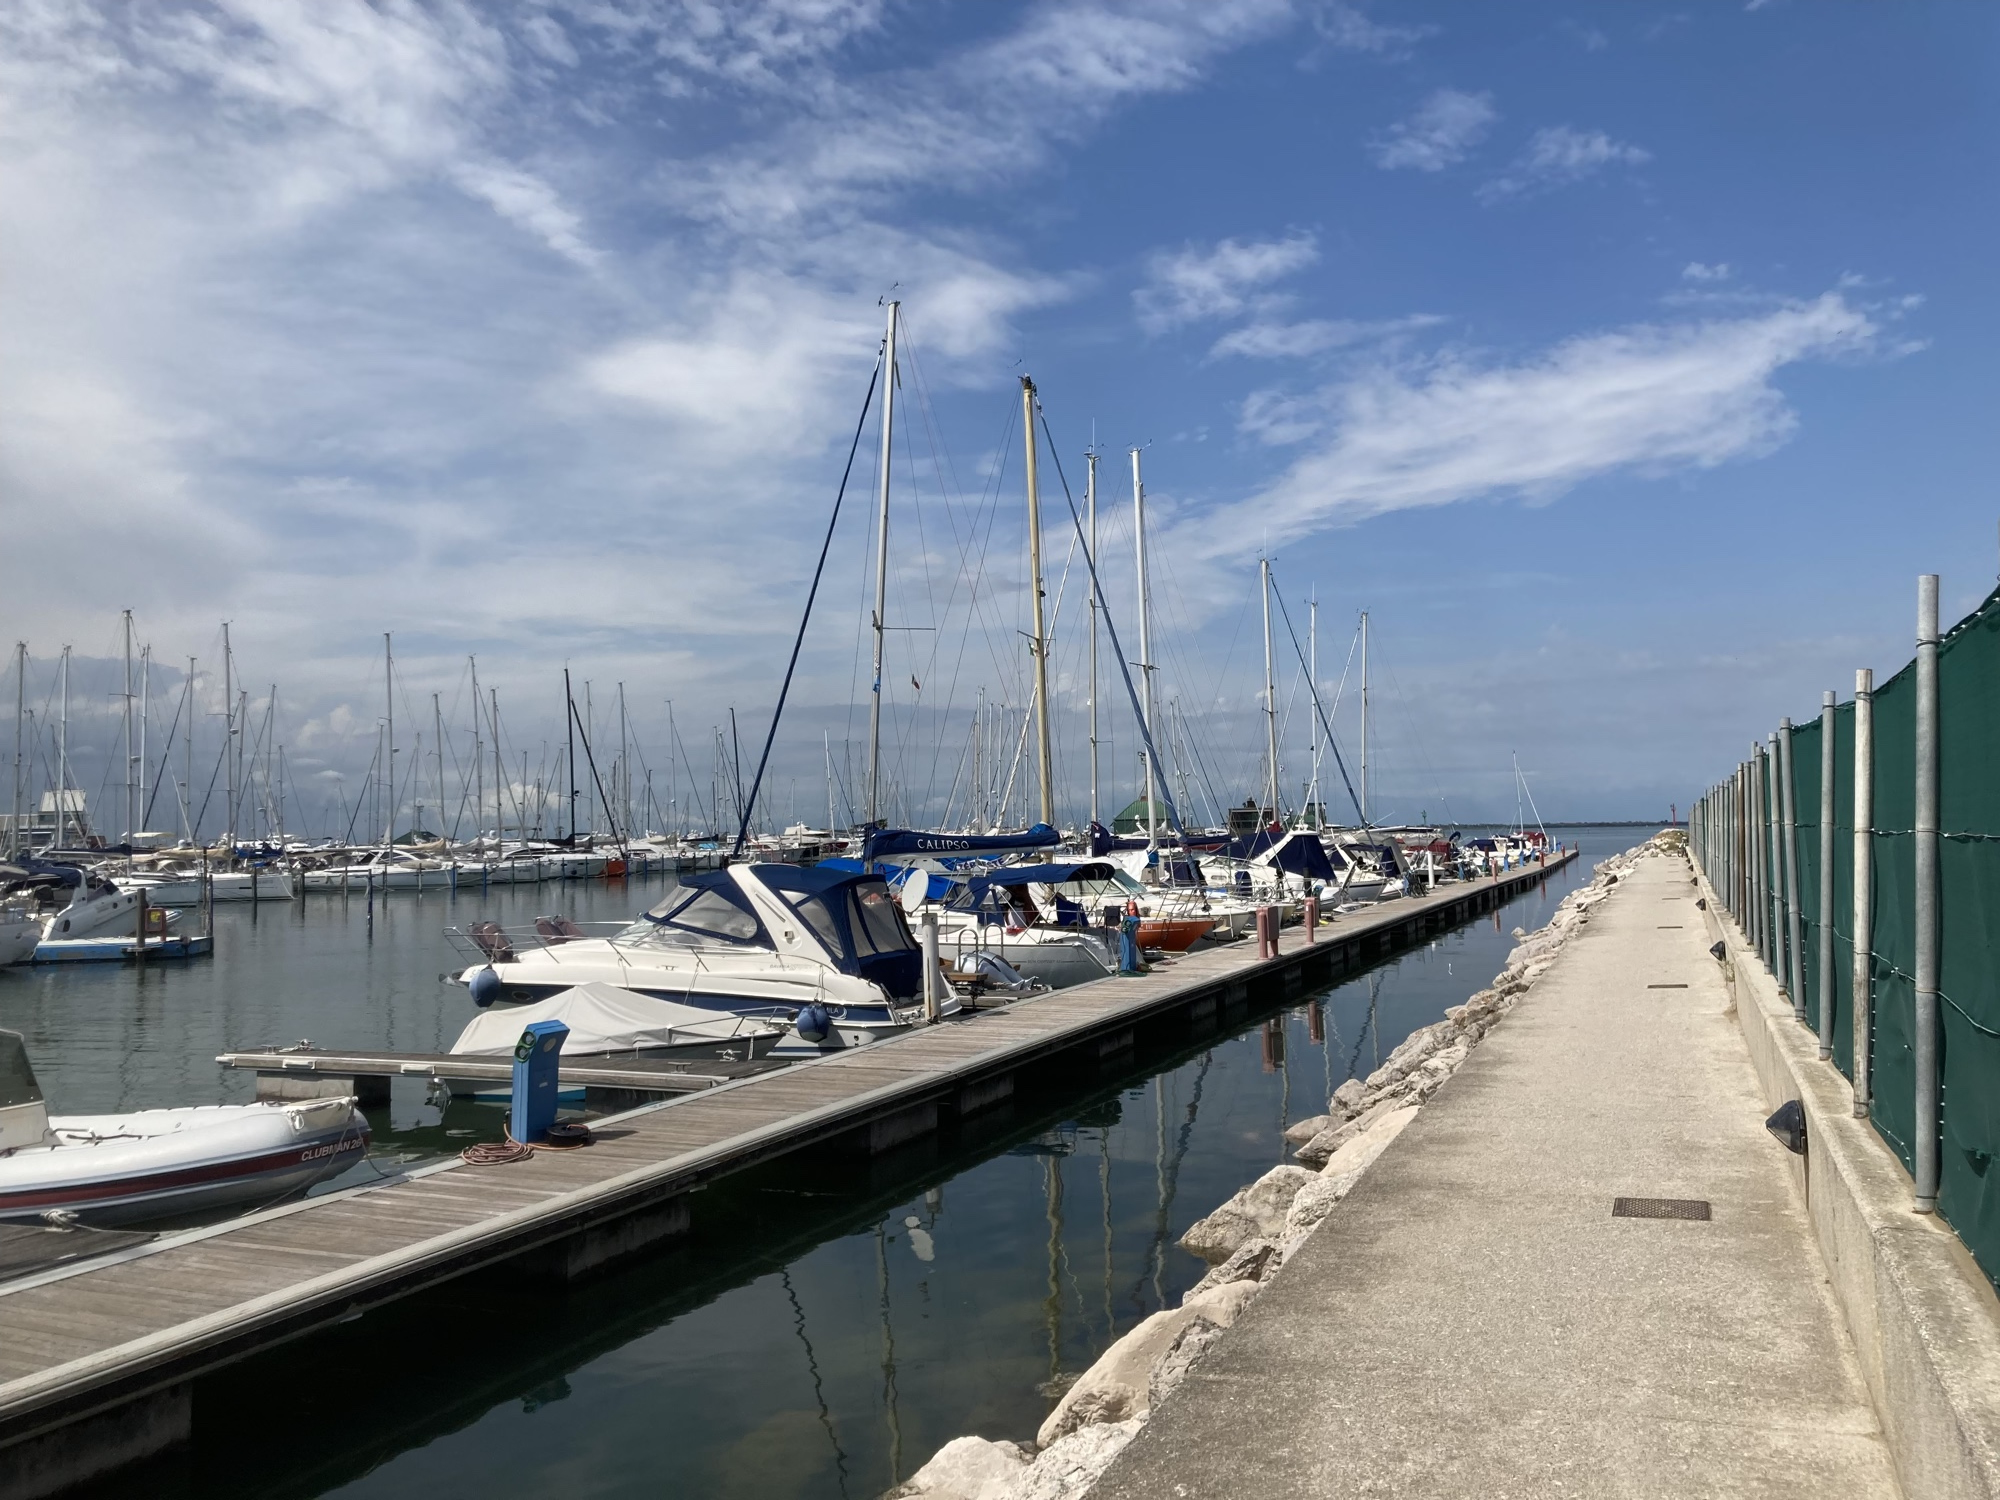 Hafen von Lignano, rechts ein geradeaus führender Weg am Wasser entlang, links verschiedene geparkte Boote und Segelboote